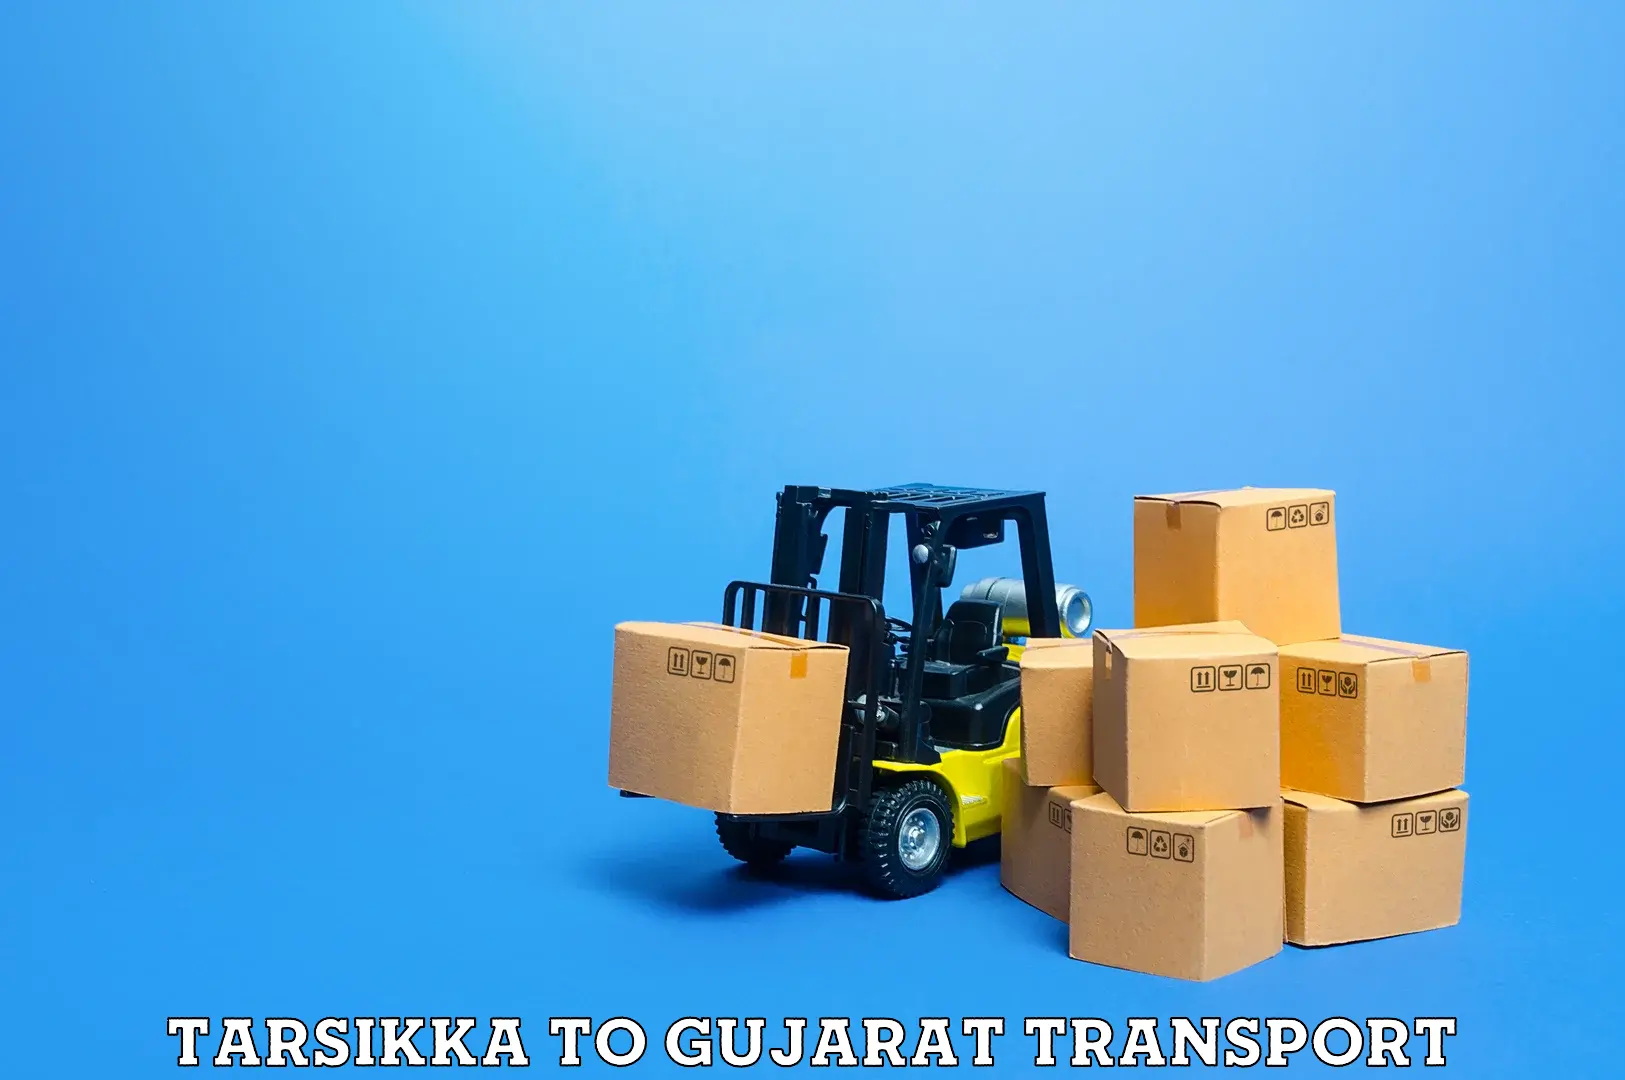 Shipping services Tarsikka to Patdi